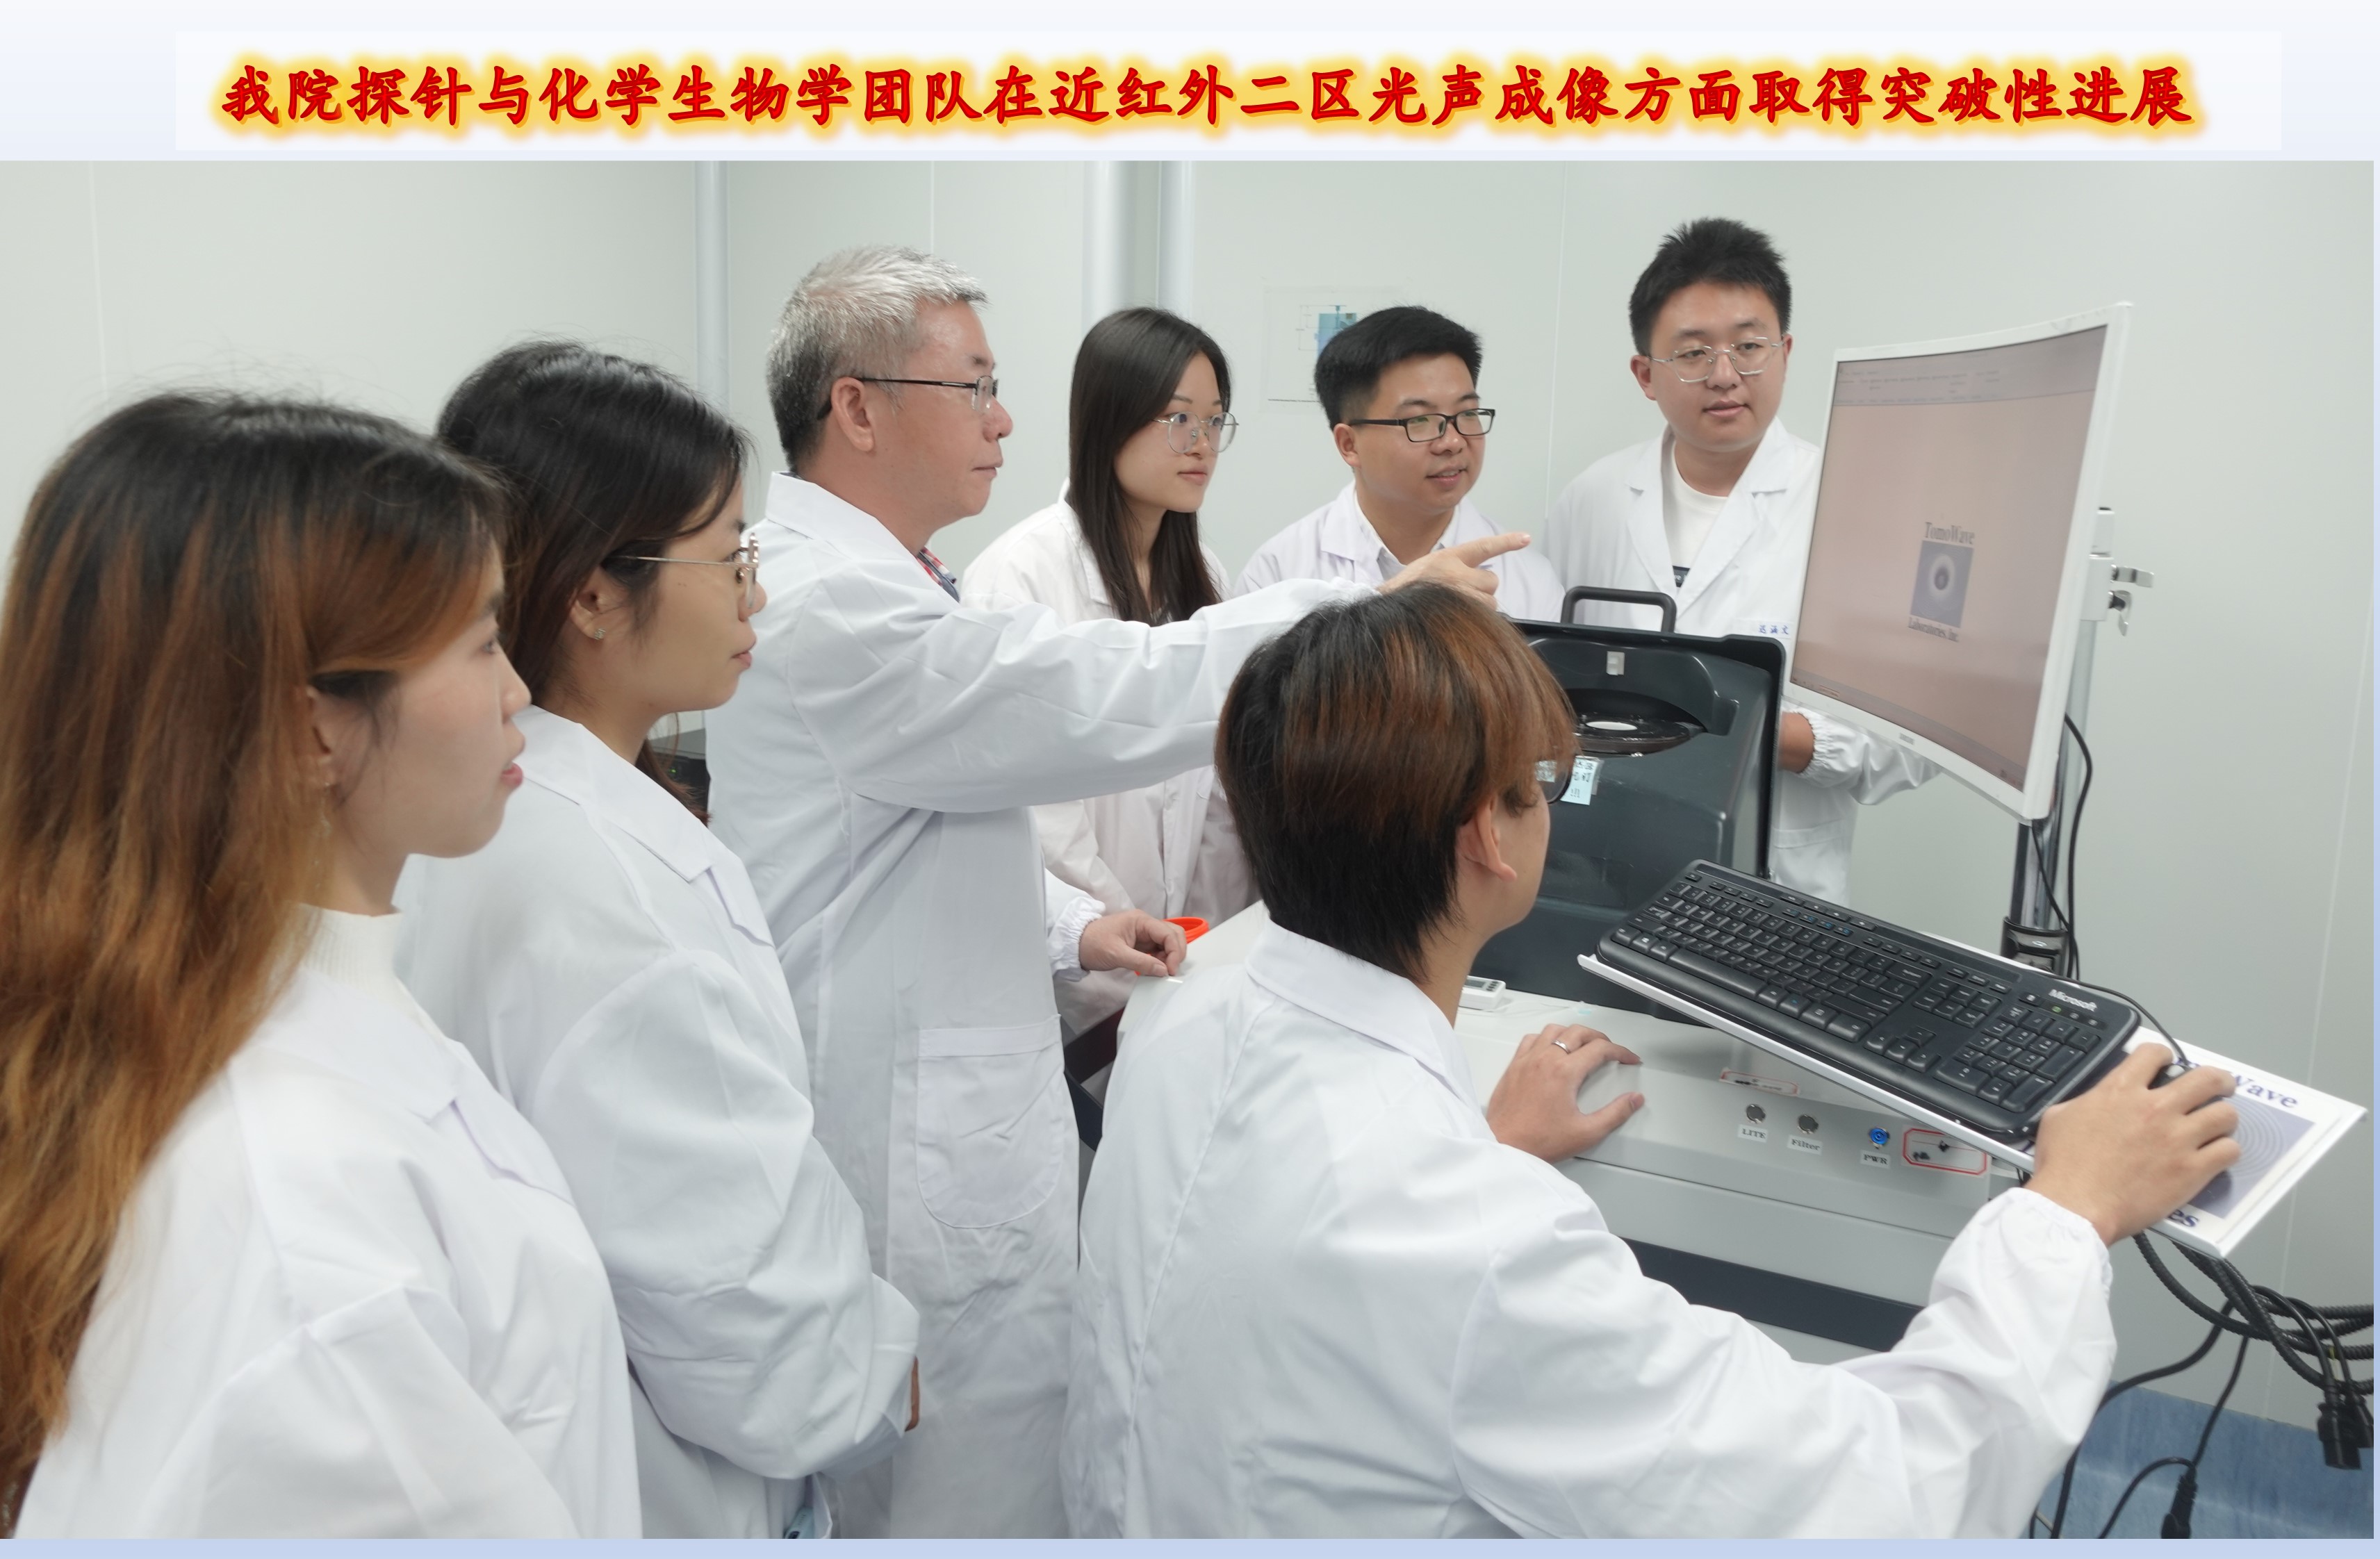 beat365体育亚洲官方网站林伟英教授团队在国际顶级学术期刊《德国应用化学》发表高水平研究成果